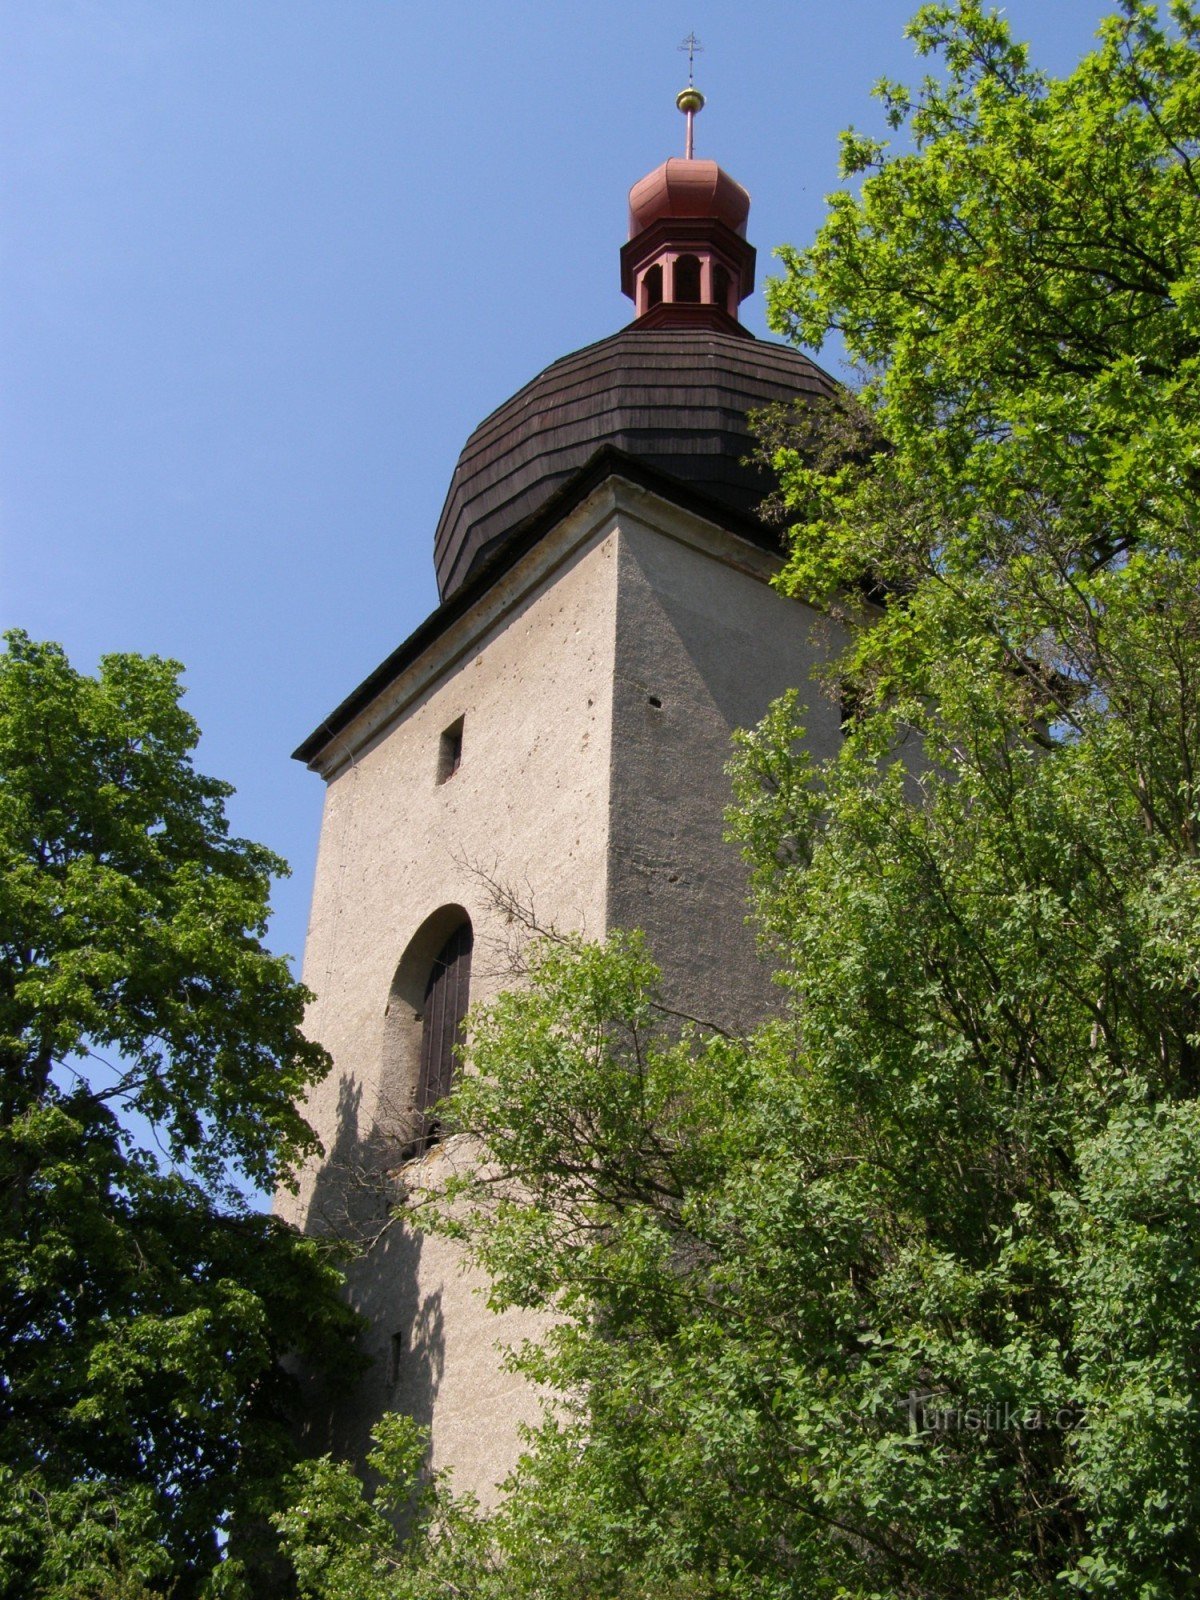 Opočno - bell tower